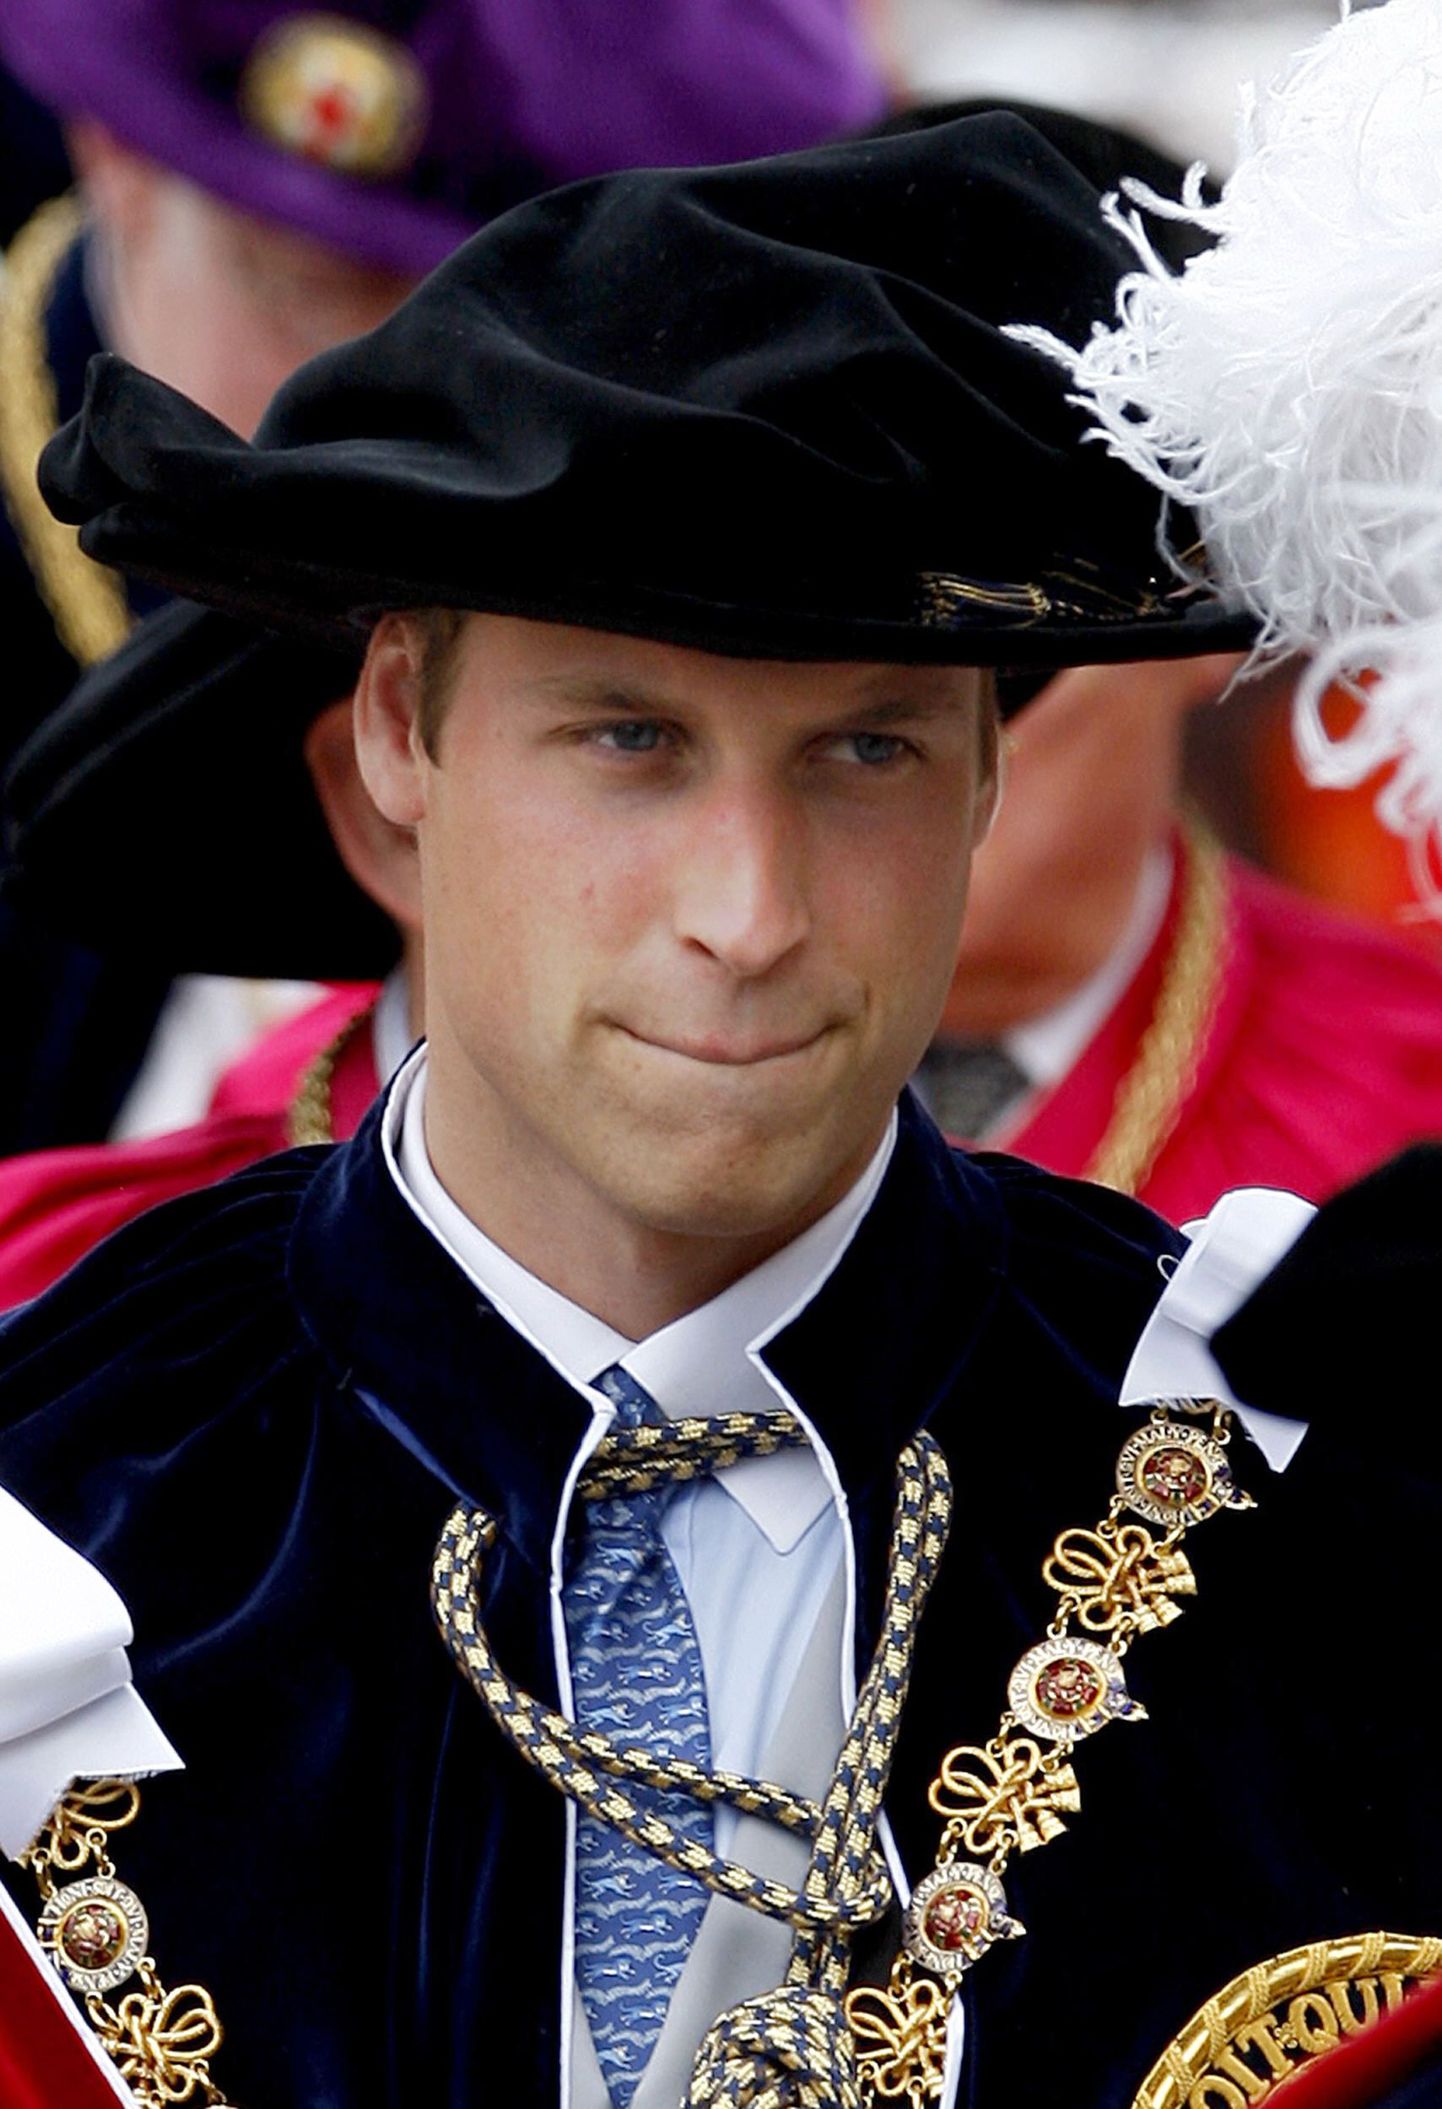 Briti prints William